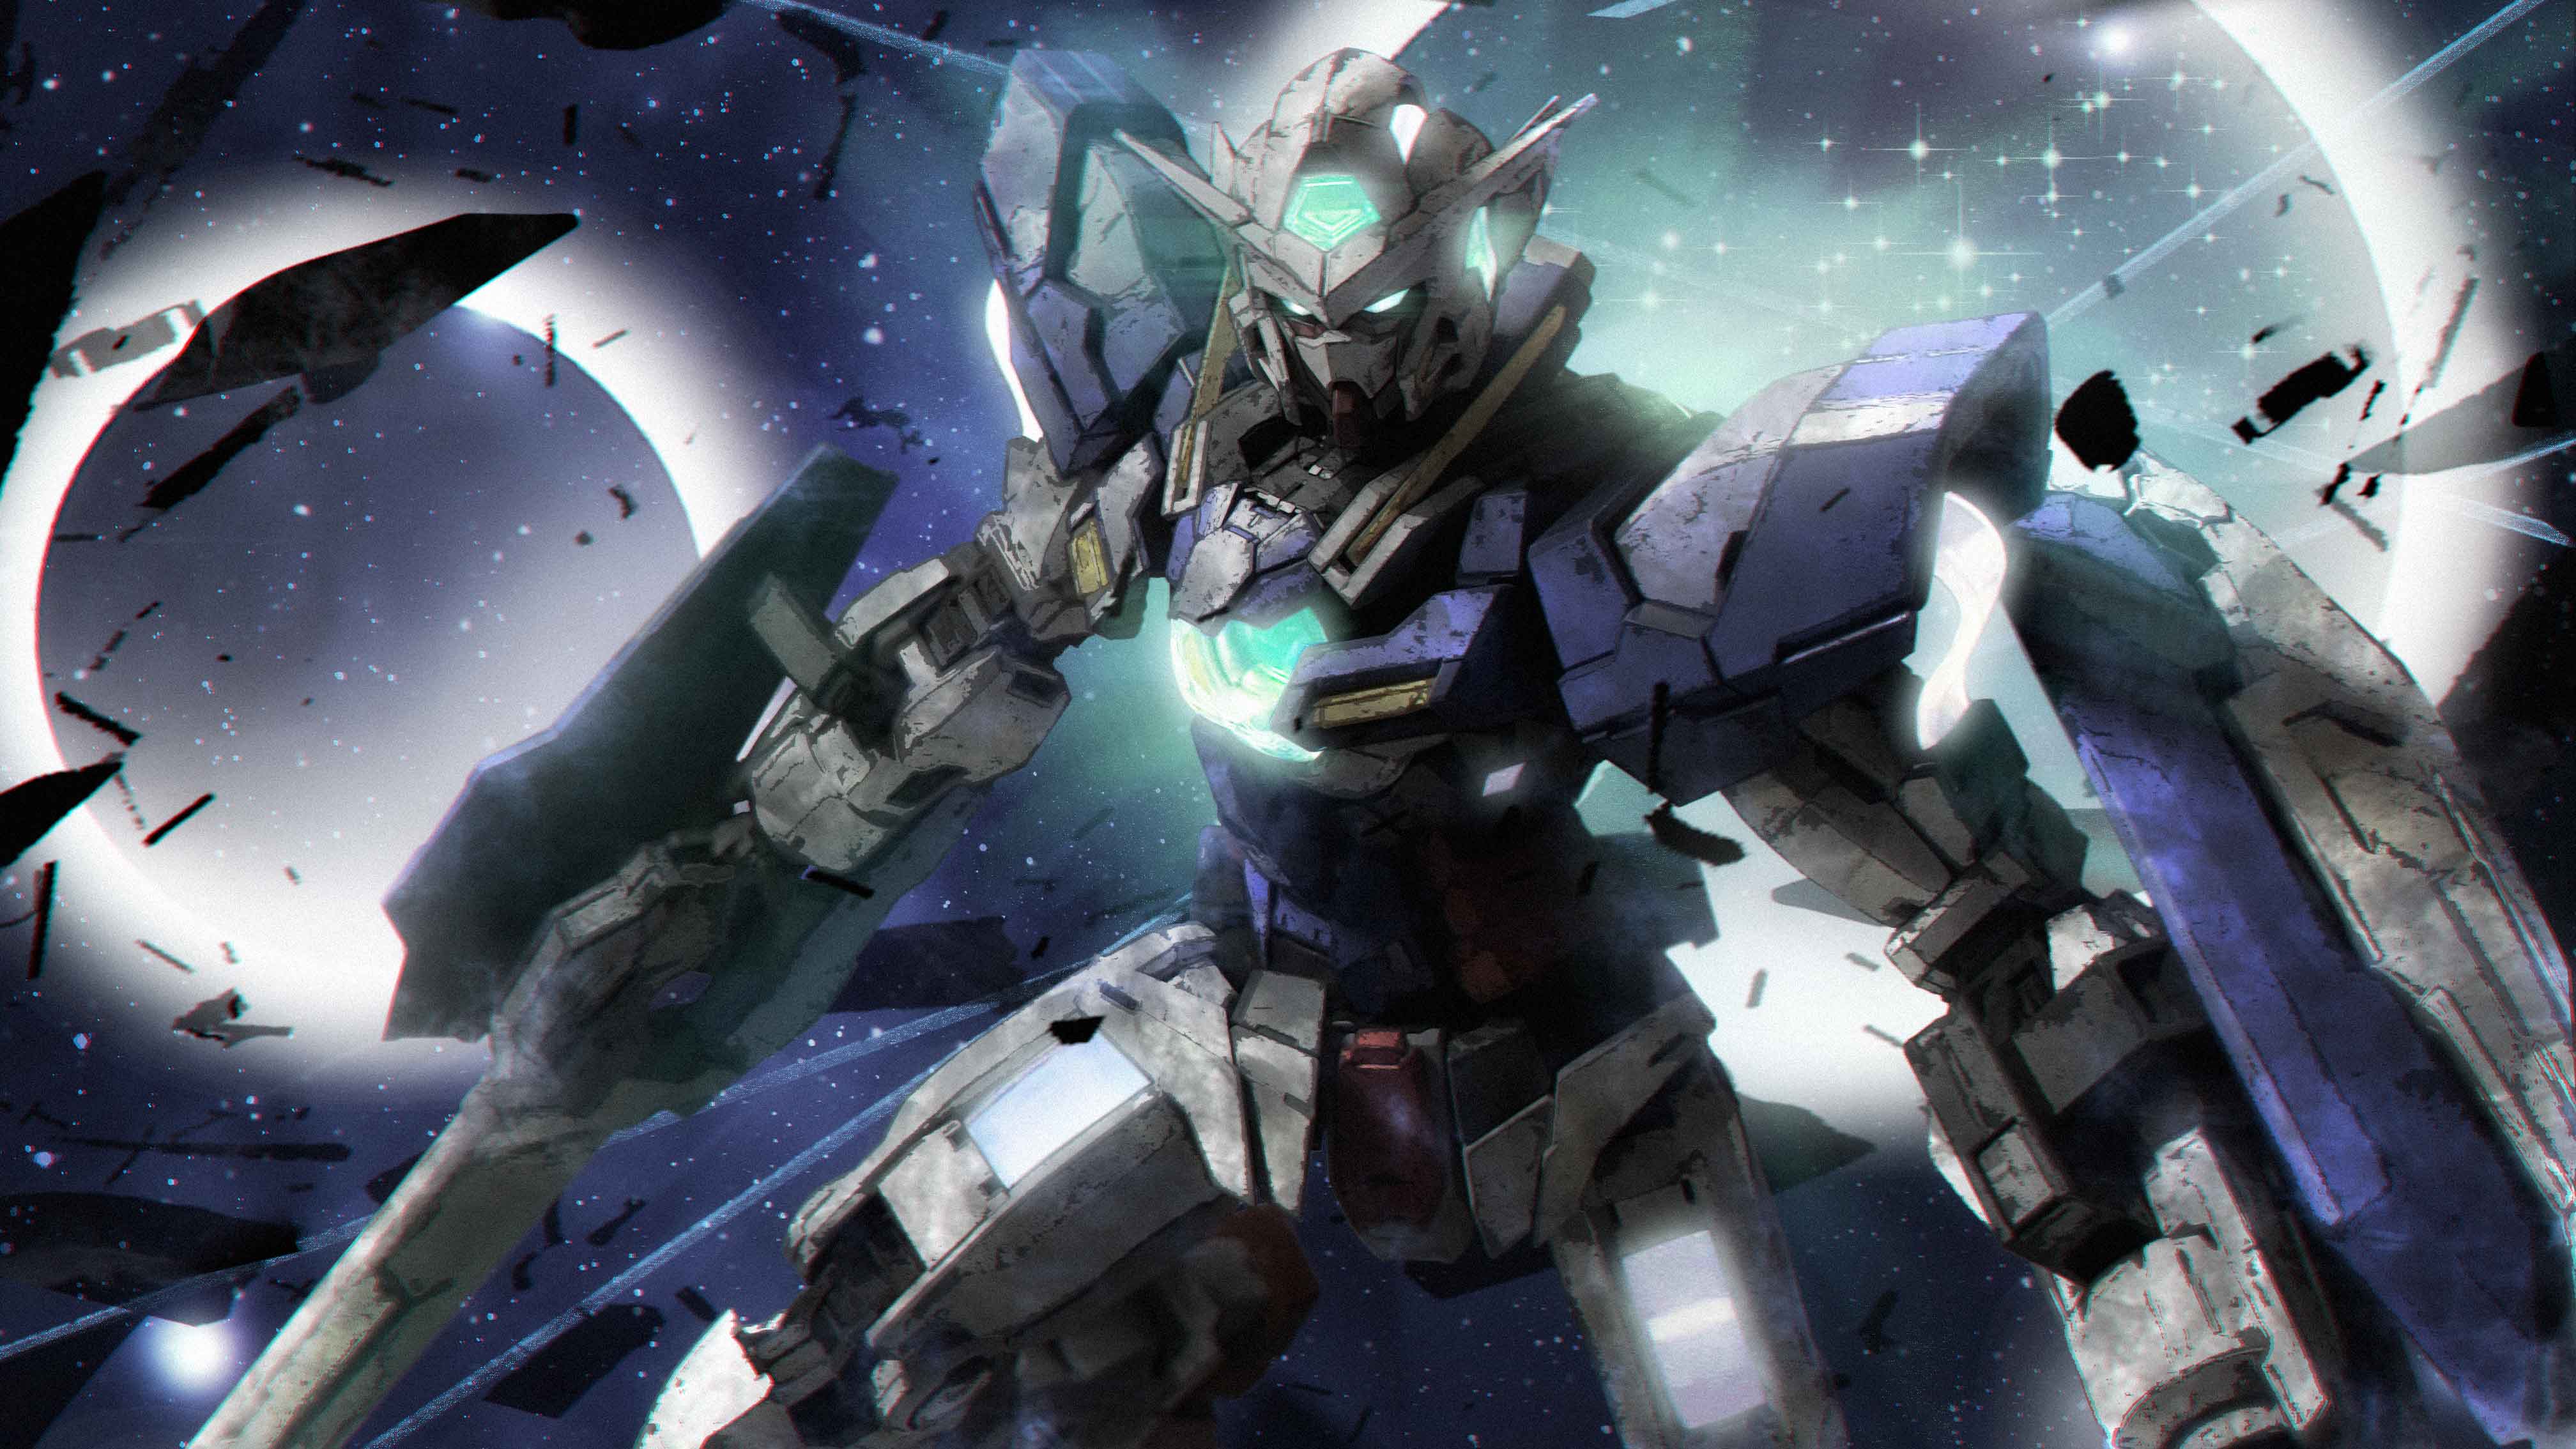 Anime Mechs Gundam Mobile Suit Gundam 00 Gundam Exia Super Robot Wars Artwork Digital Art Fan Art 4032x2268